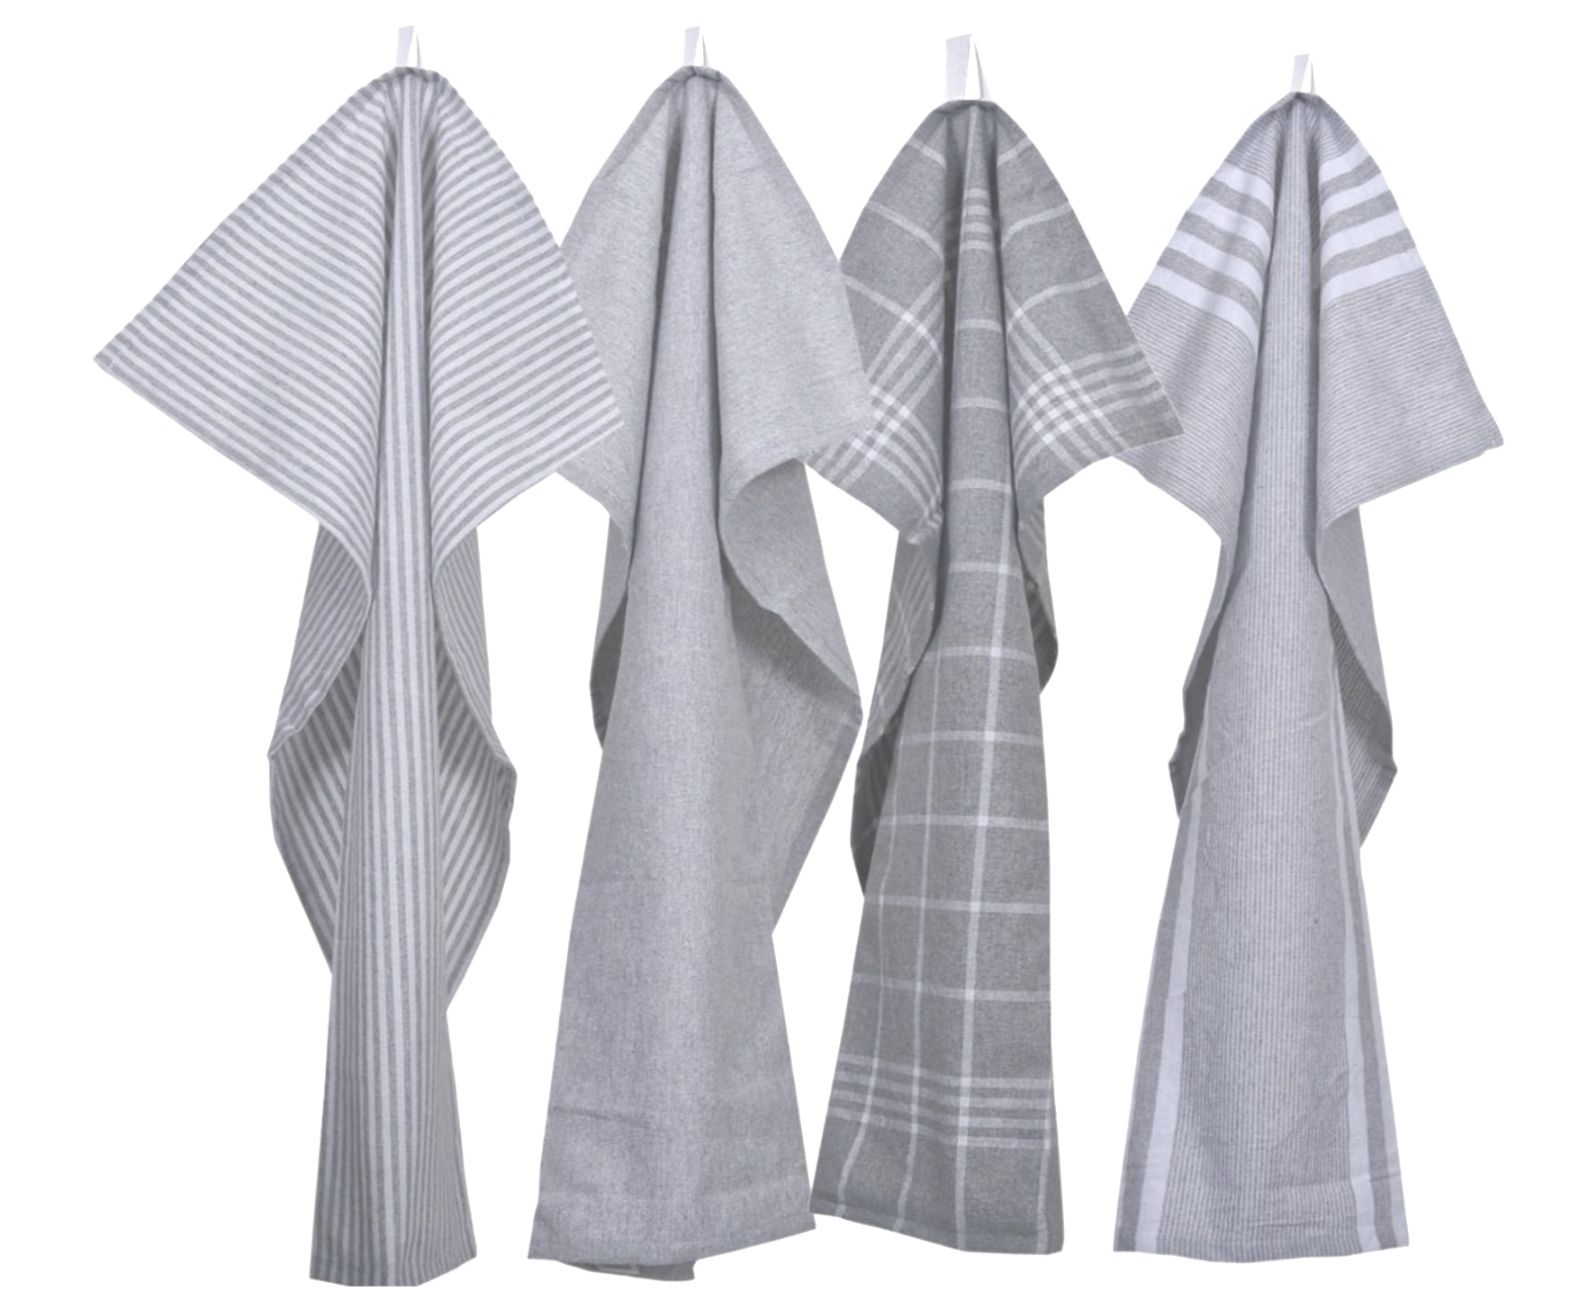 Kökshandduk från Classic textile i återvunna textilier. Färg: Ljusgrå och vitrutig.